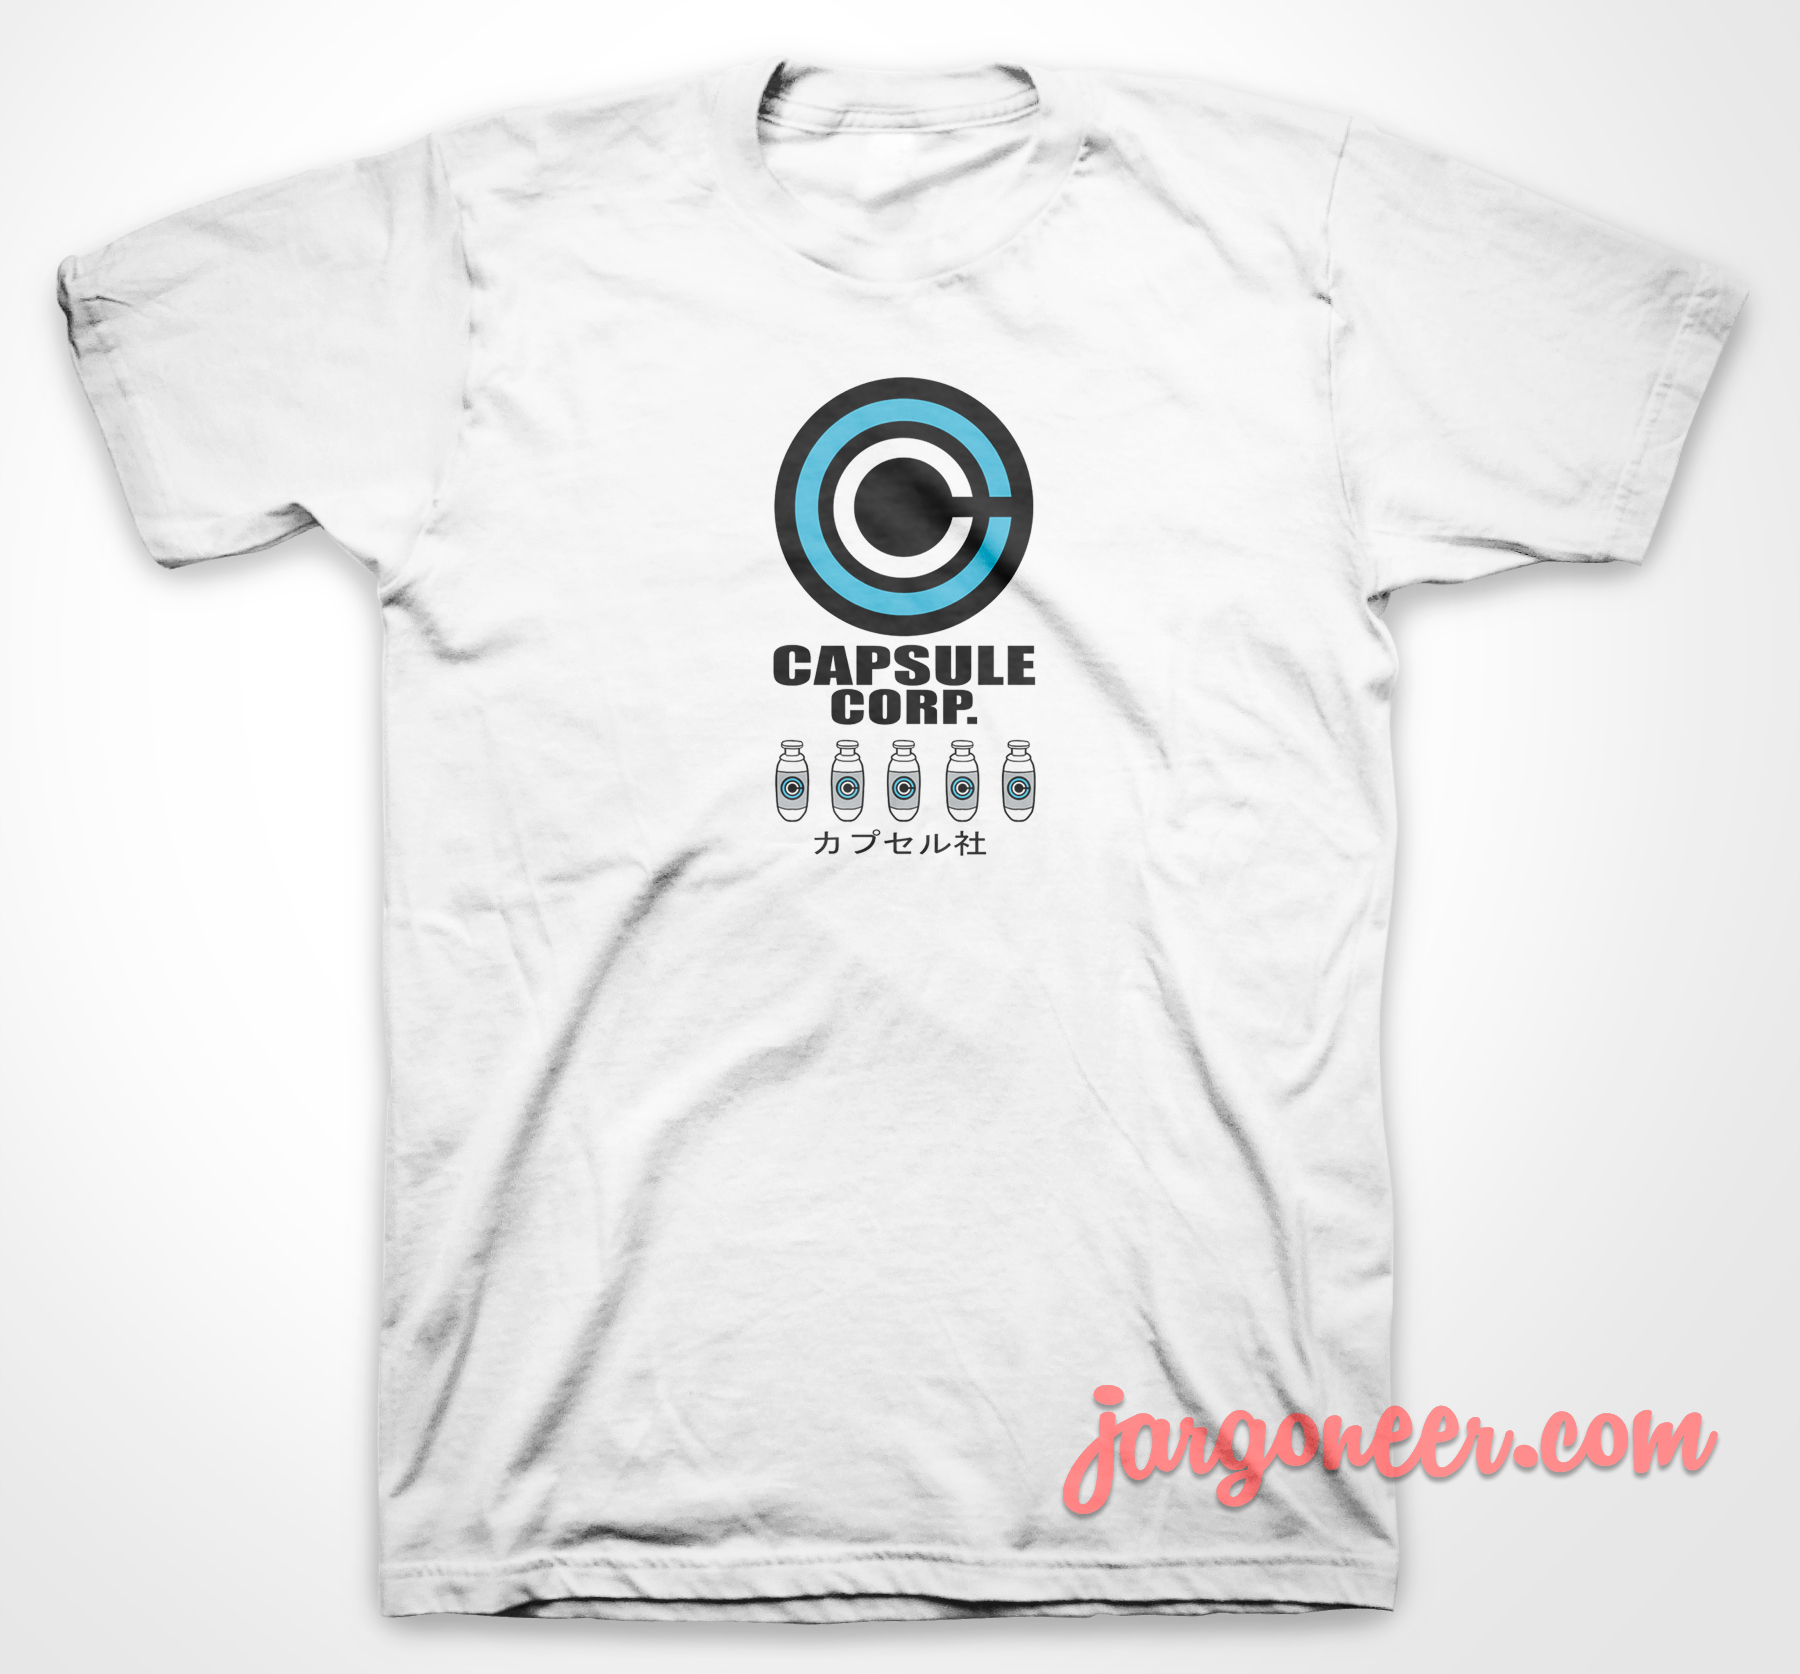 Capsule Corp 2 - Shop Unique Graphic Cool Shirt Designs